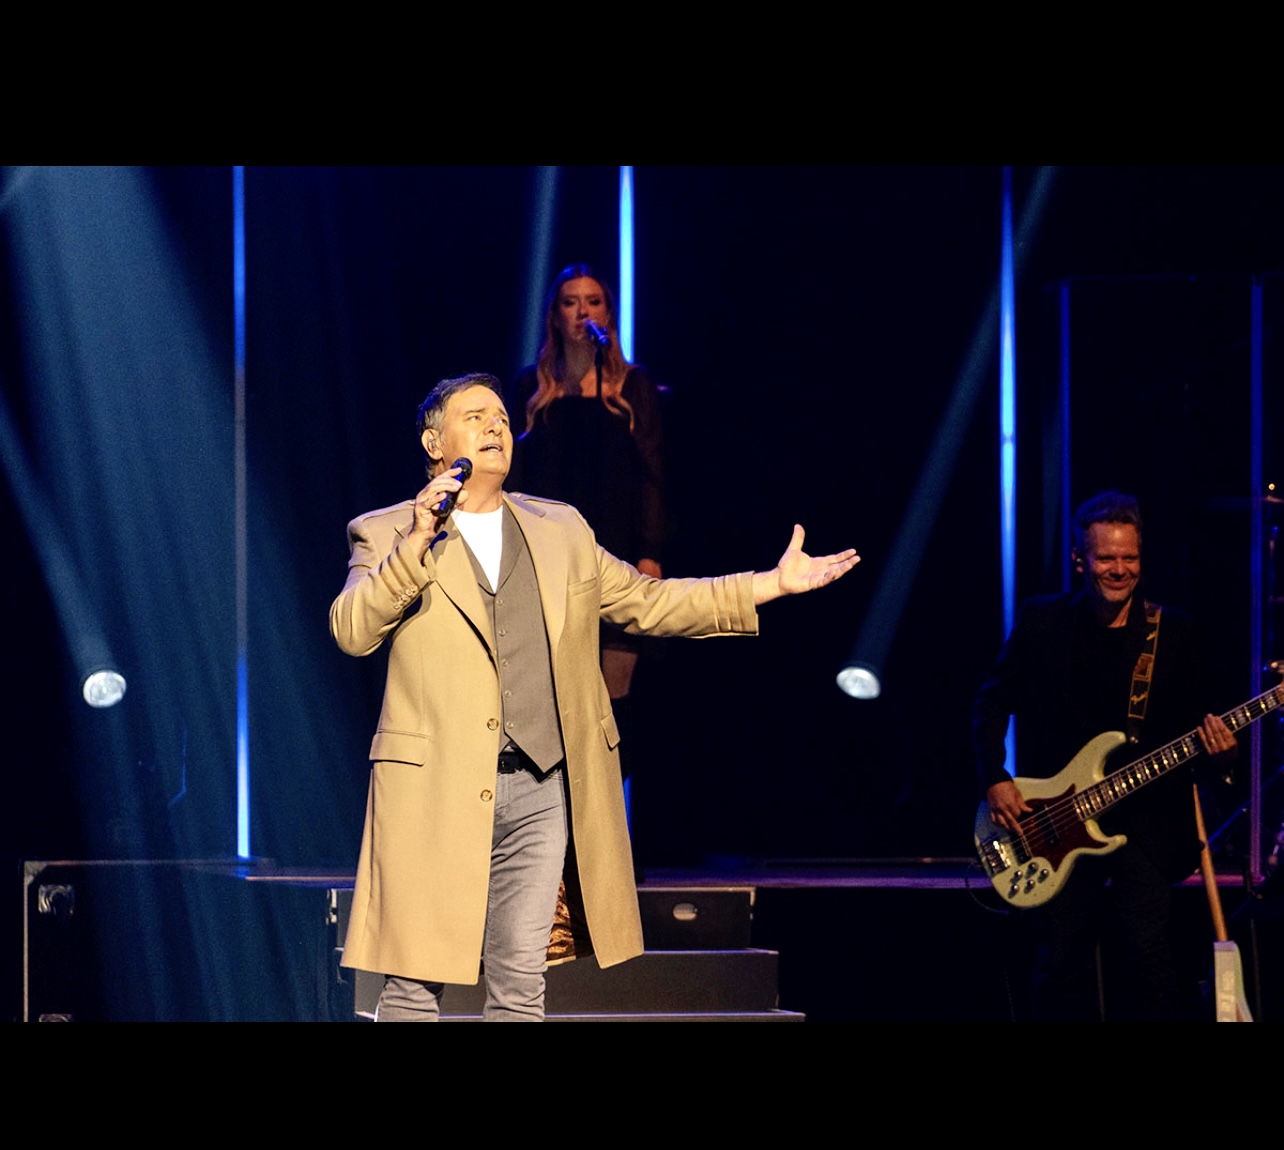 Mario Pelchat, un homme en manteau marron, chante sur scène.